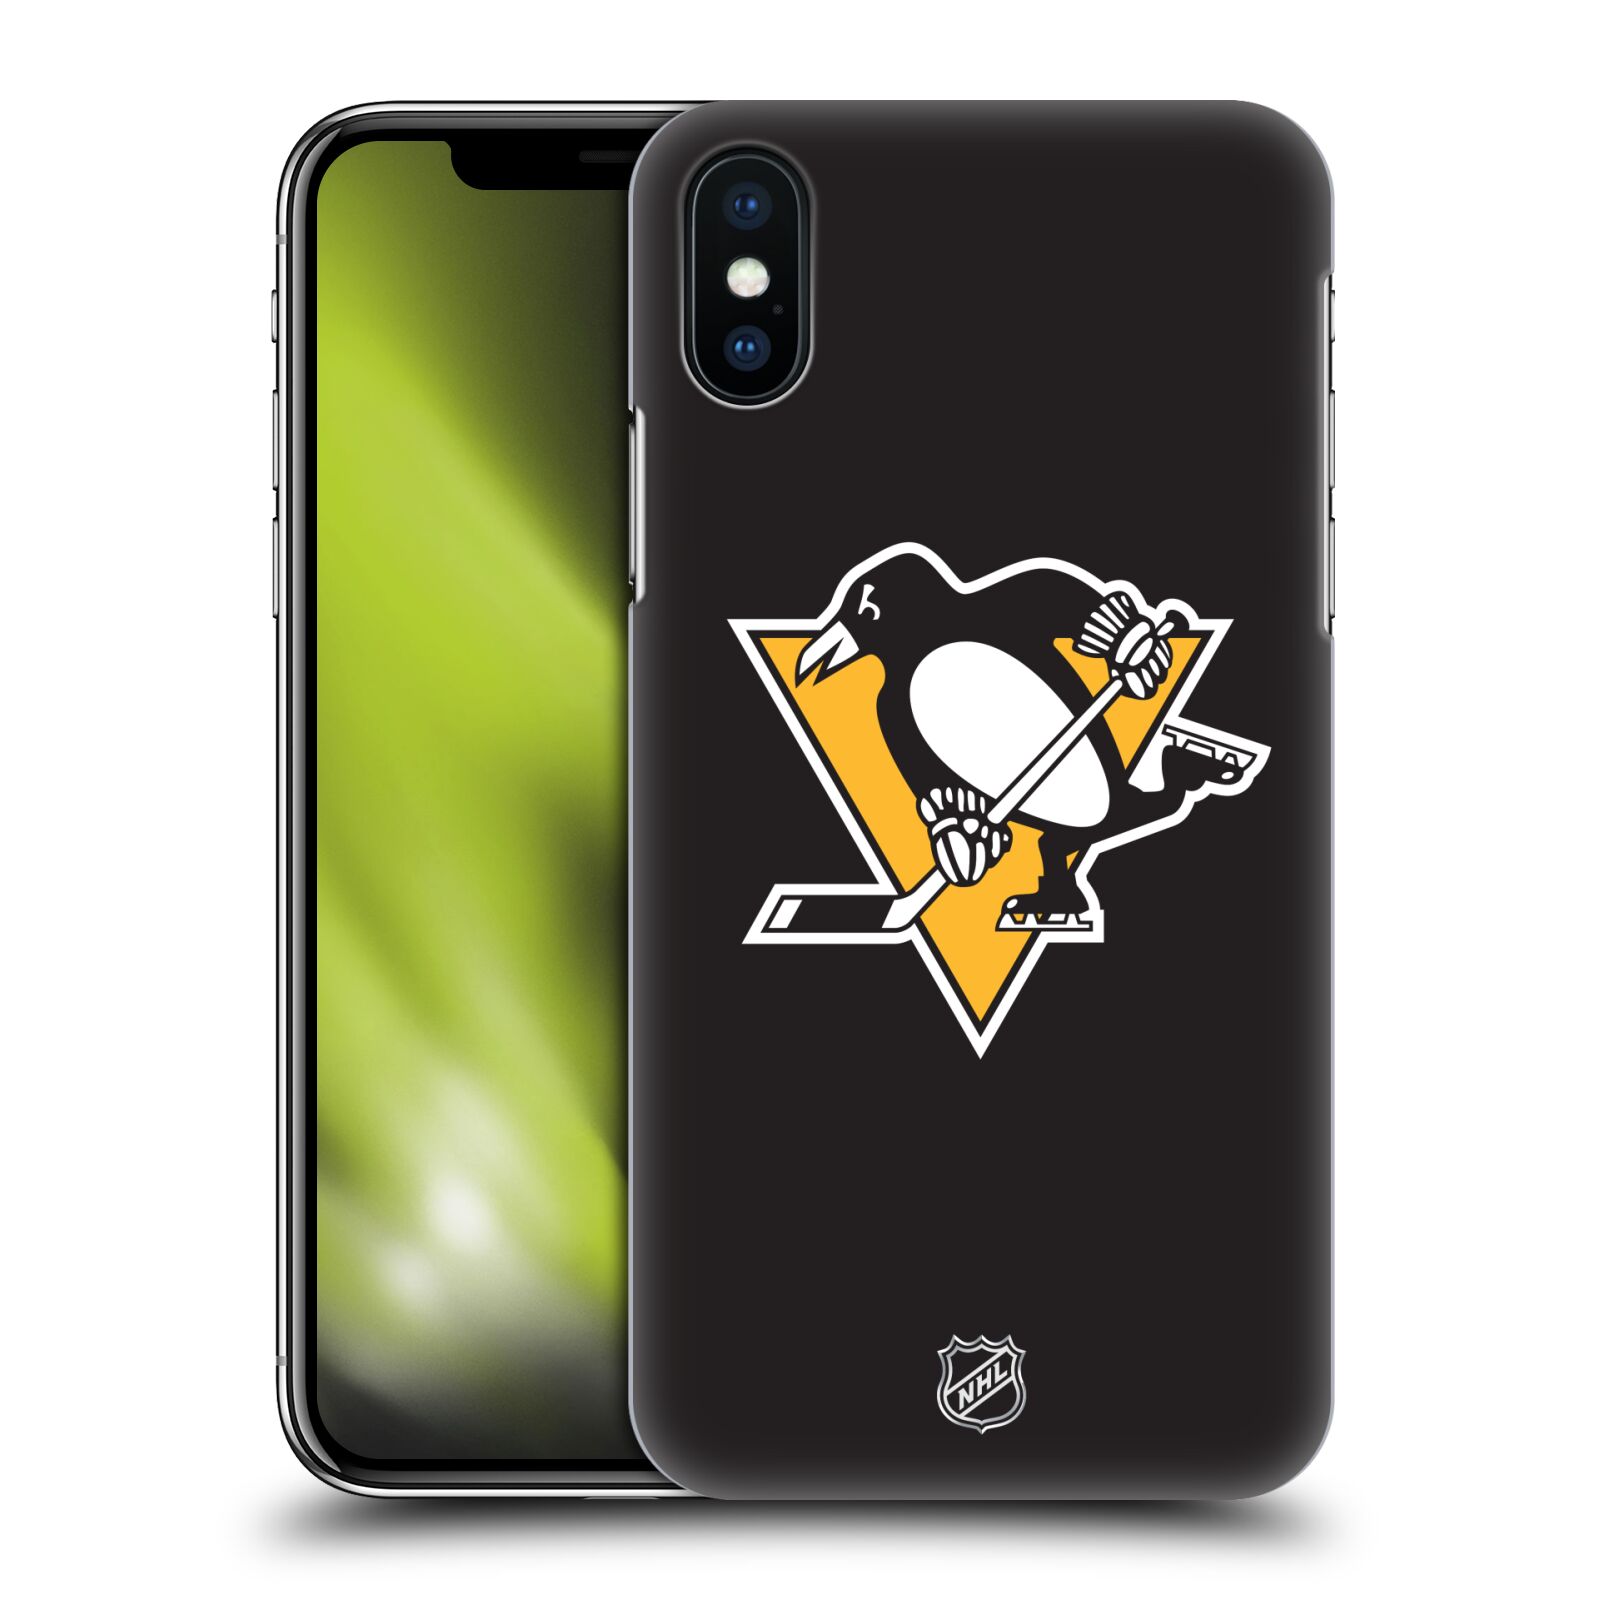 Pouzdro na mobil Apple Iphone X/XS - HEAD CASE - Hokej NHL - Pittsburgh Penguins - černé pozadí znak